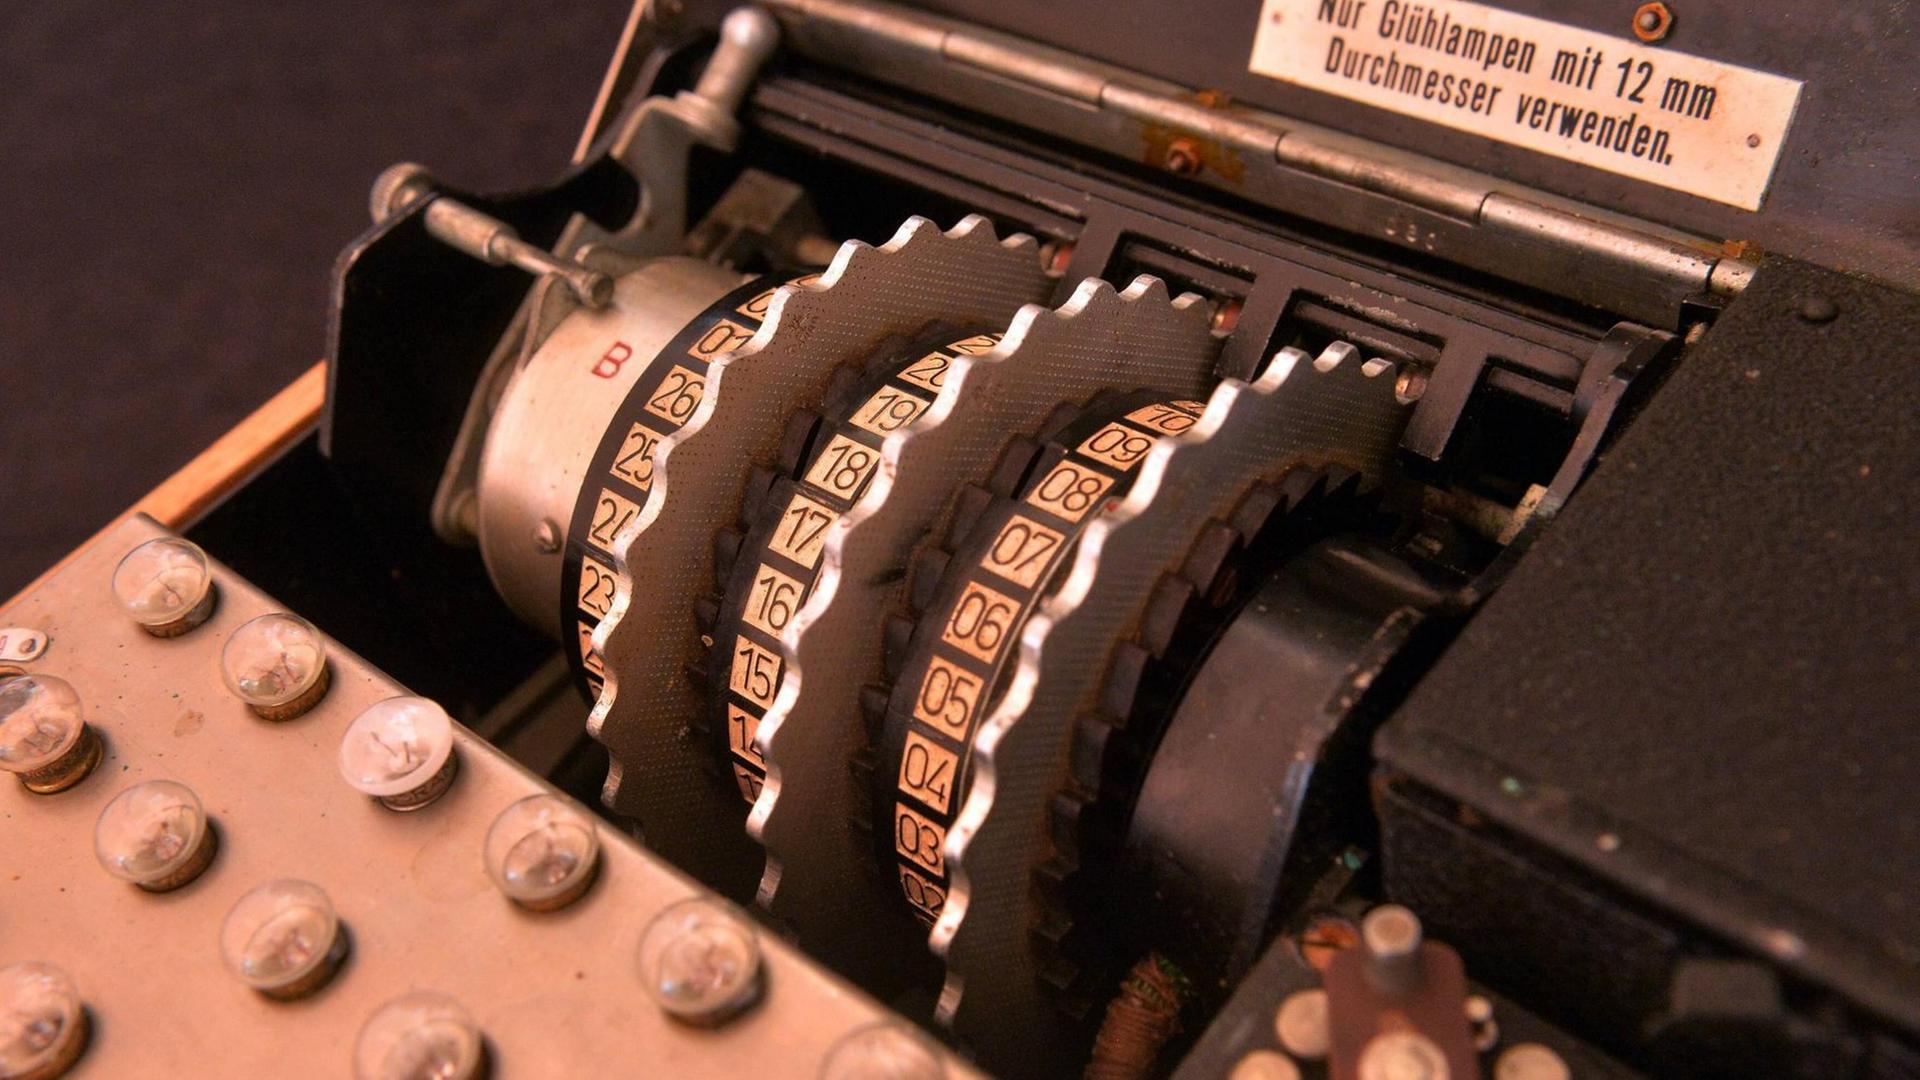 Eine seltene Drei-Rotor-Enigma, die während des Zweiten Weltkrieges von Deutschland genutzt wurde, um Nachrichten zu verwchlüsseln. Diese Enigma wurde am 30.Mai 2019 bei einer Auktion angeboten. Die drei Rotorscheiben sind zu sehen, ebenso eine Tastatur.